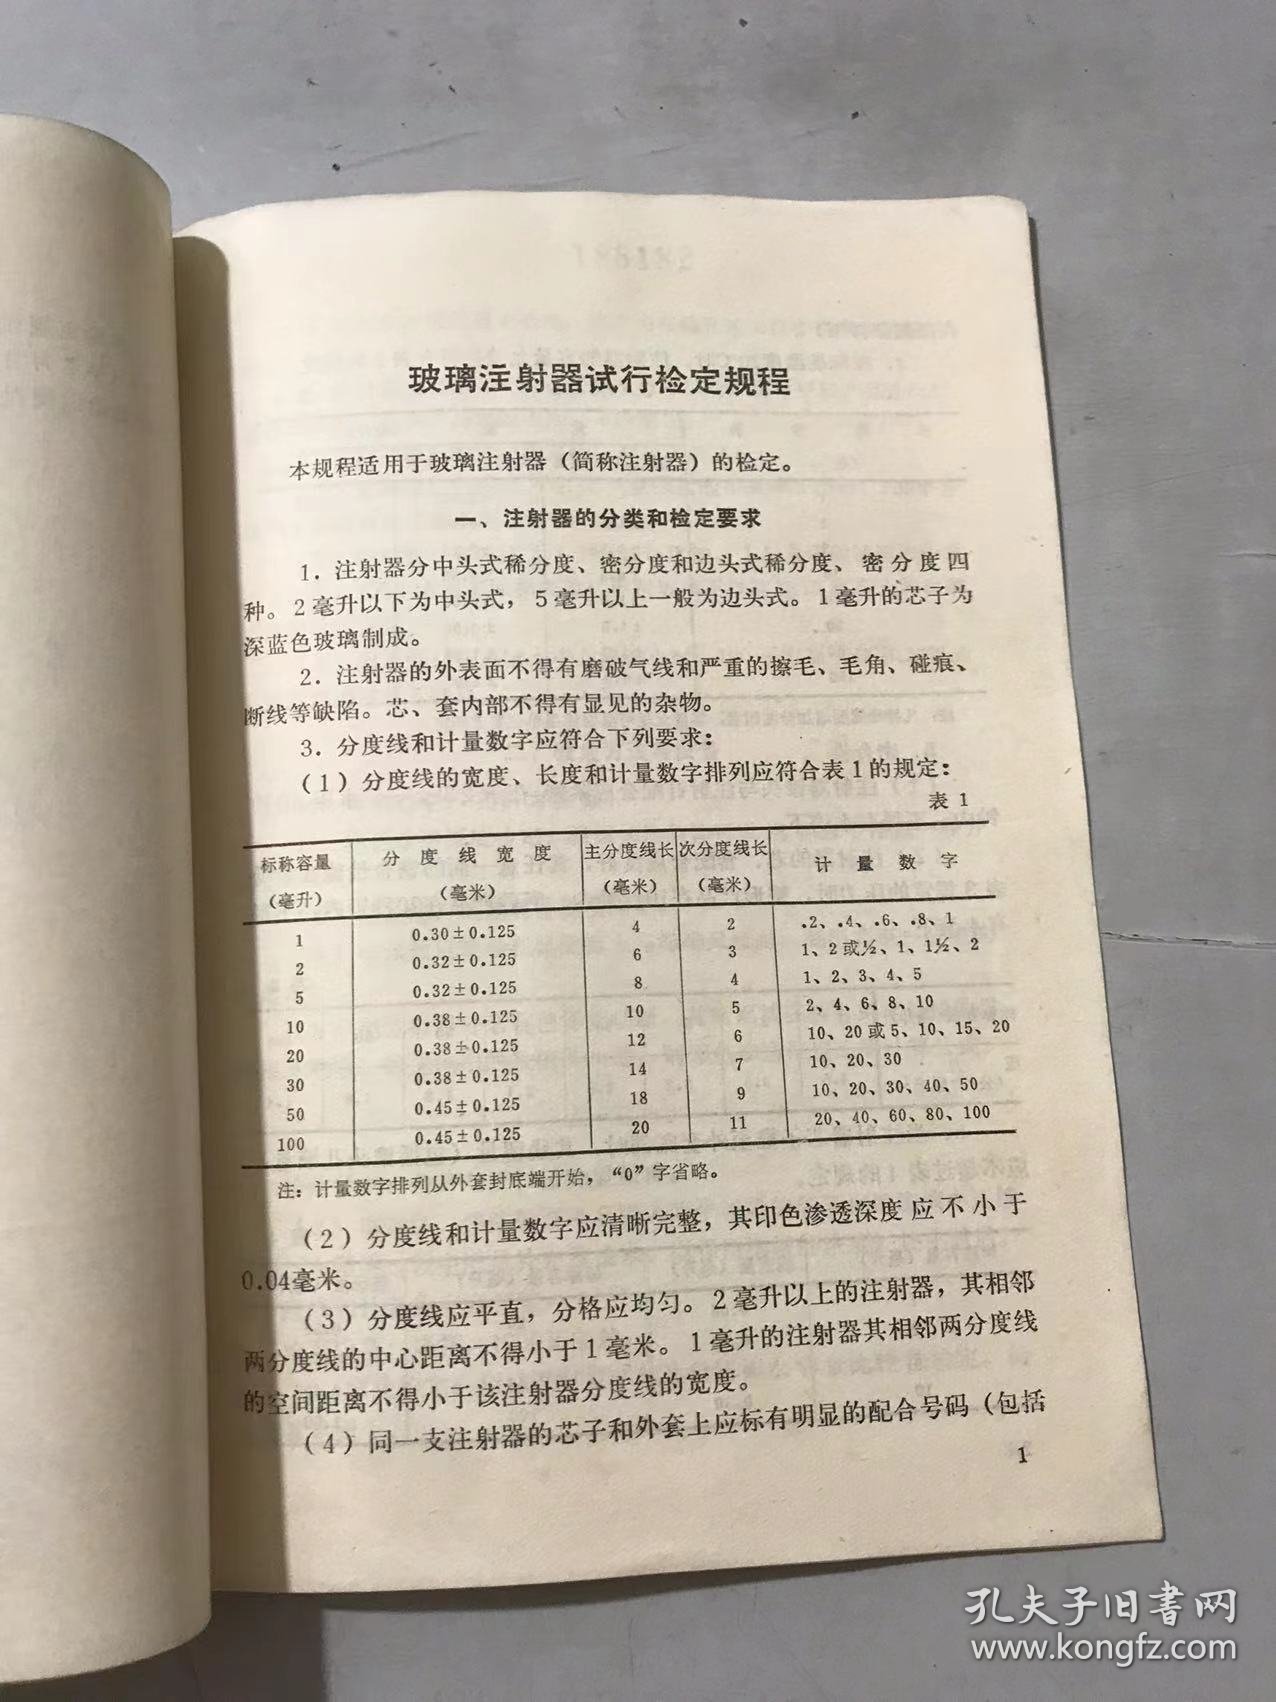 中华人民共和国标准计量局《玻璃注射器试行检定规程 JJG 18-74》。